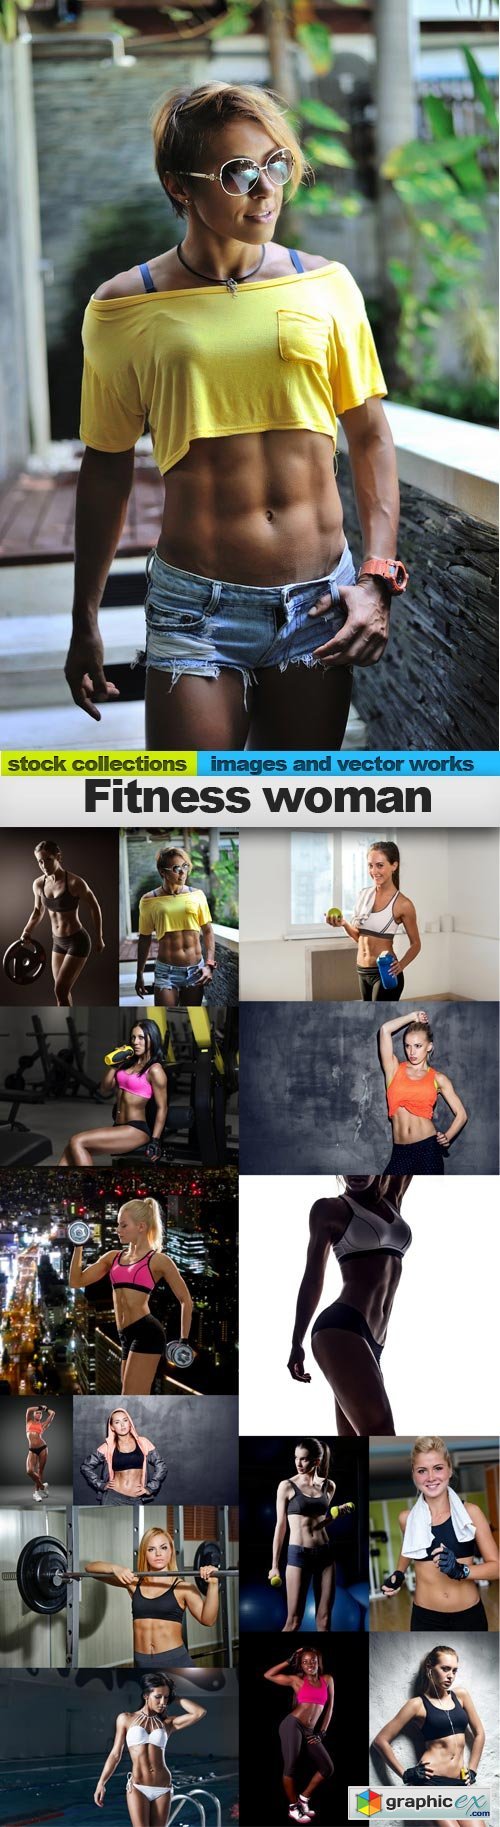 Ftness woman, 15 x UHQ JPEG